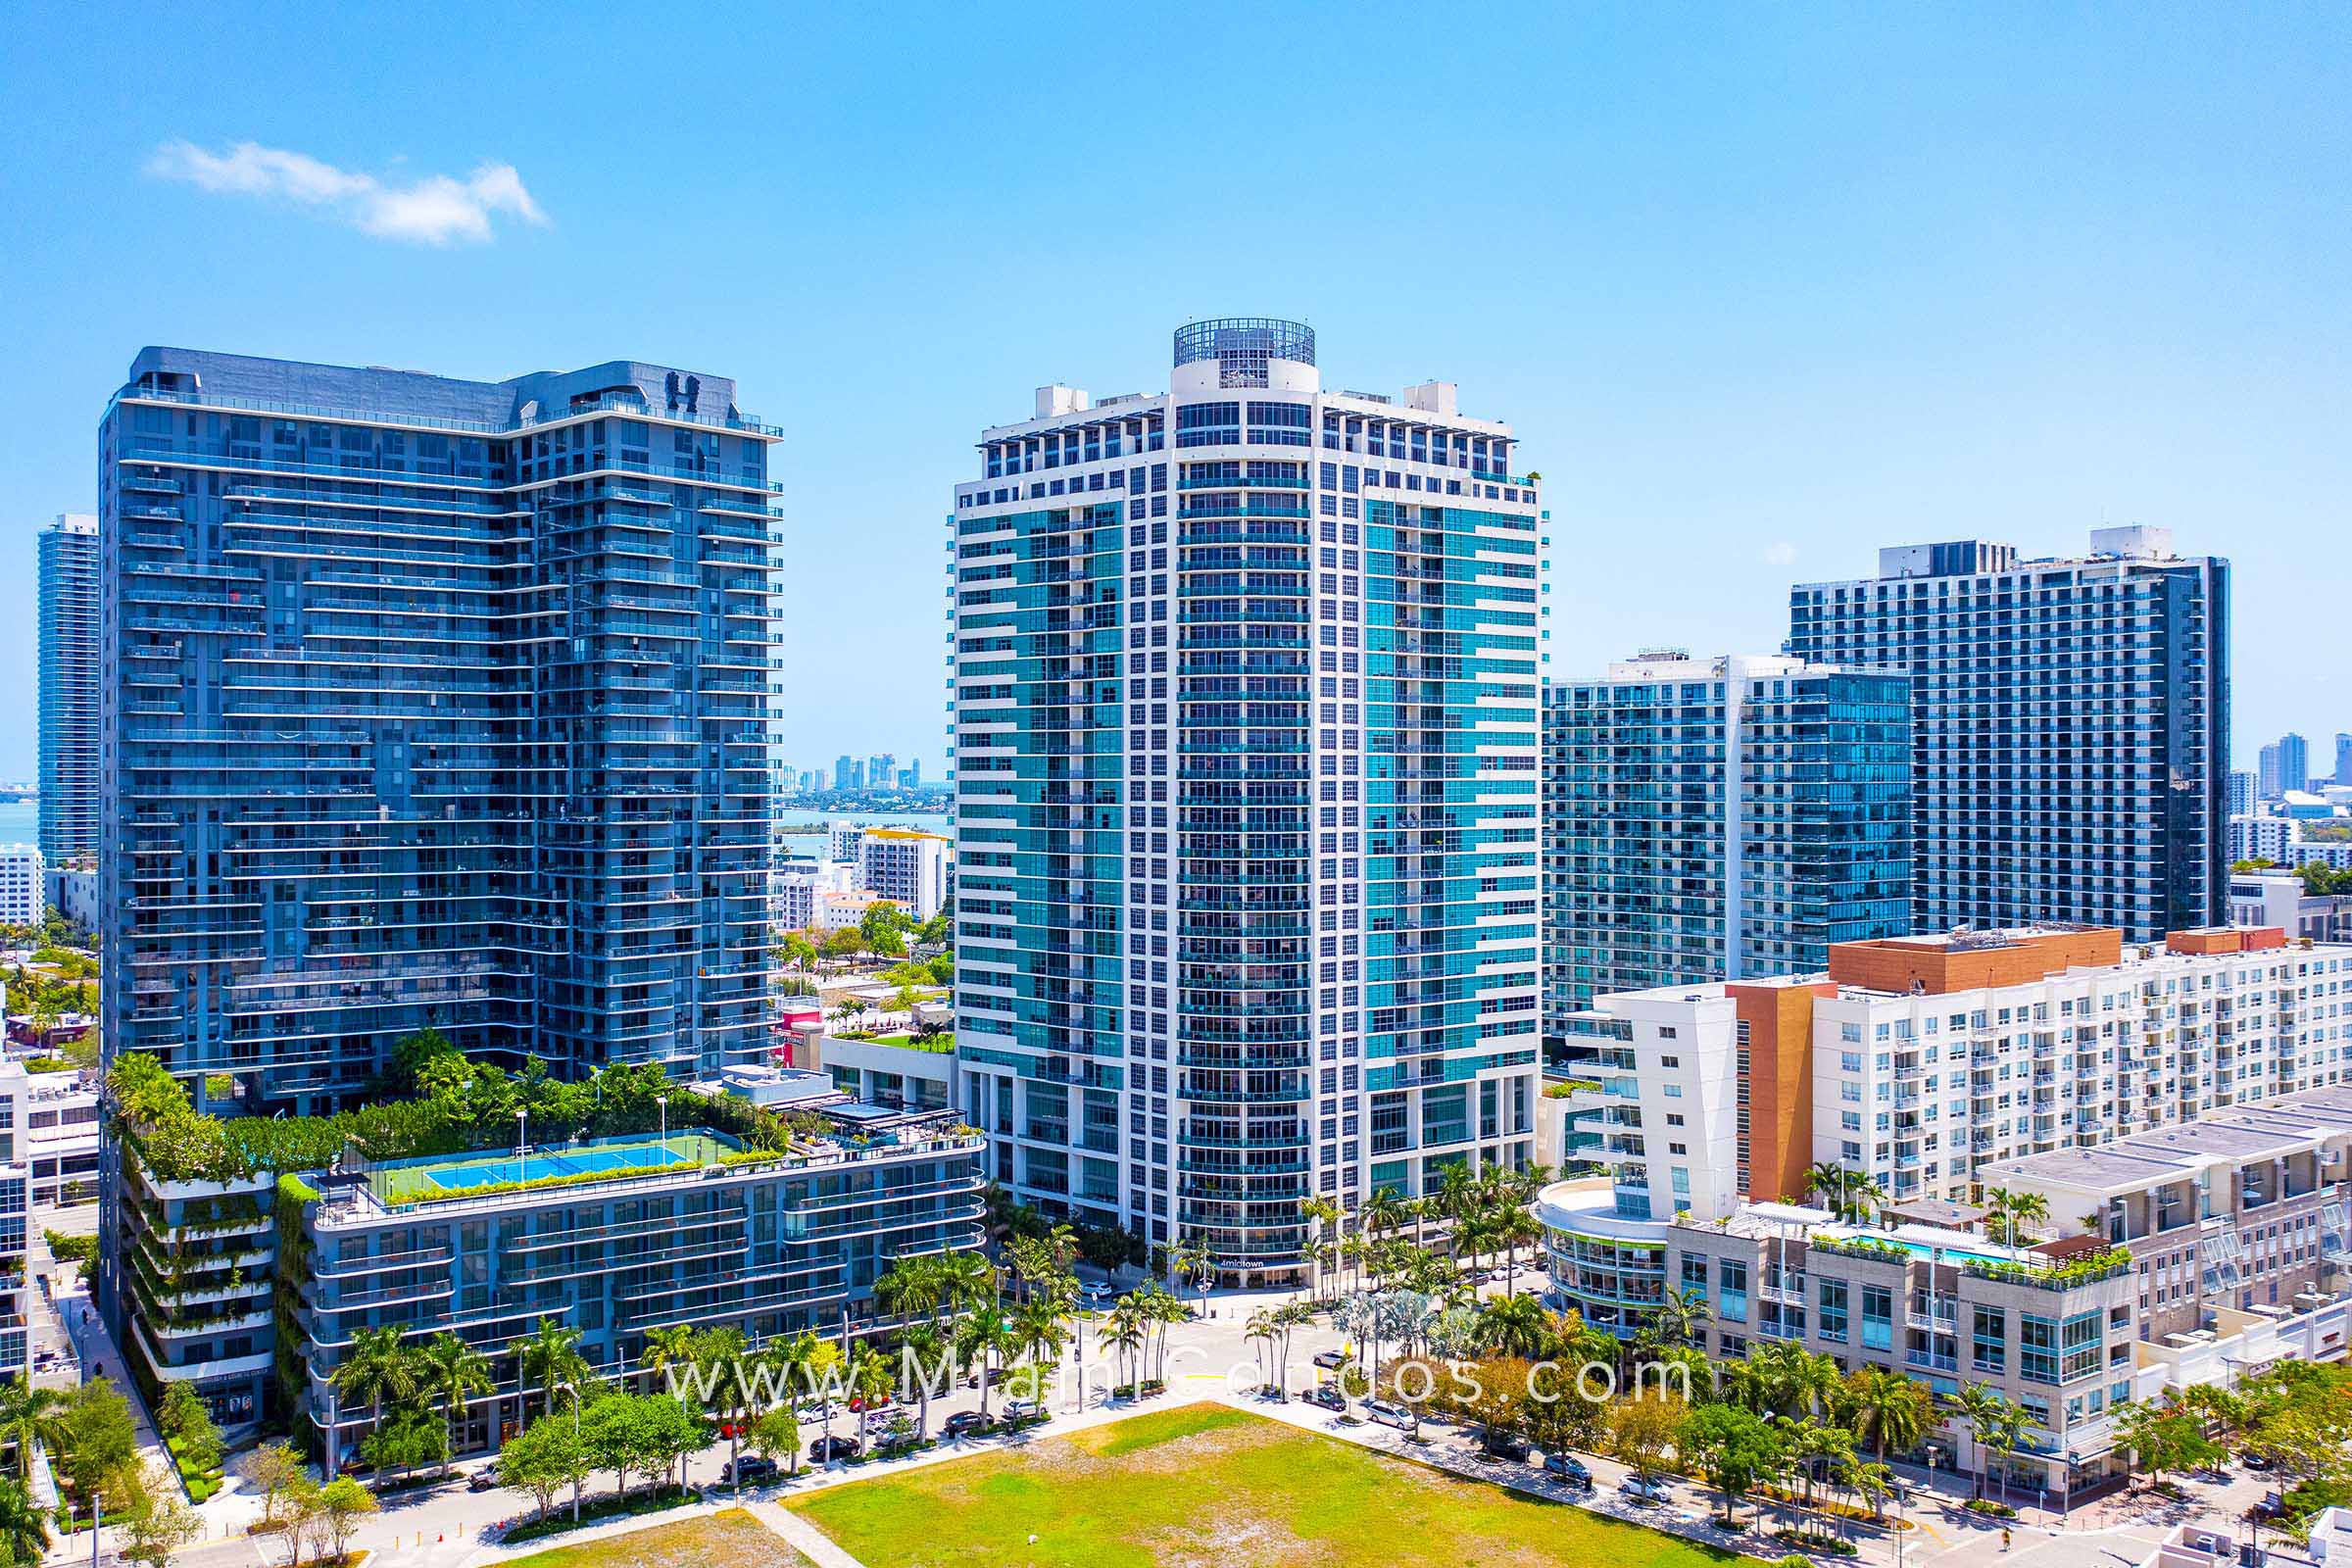 Midtown 4 Condo Building in Miami